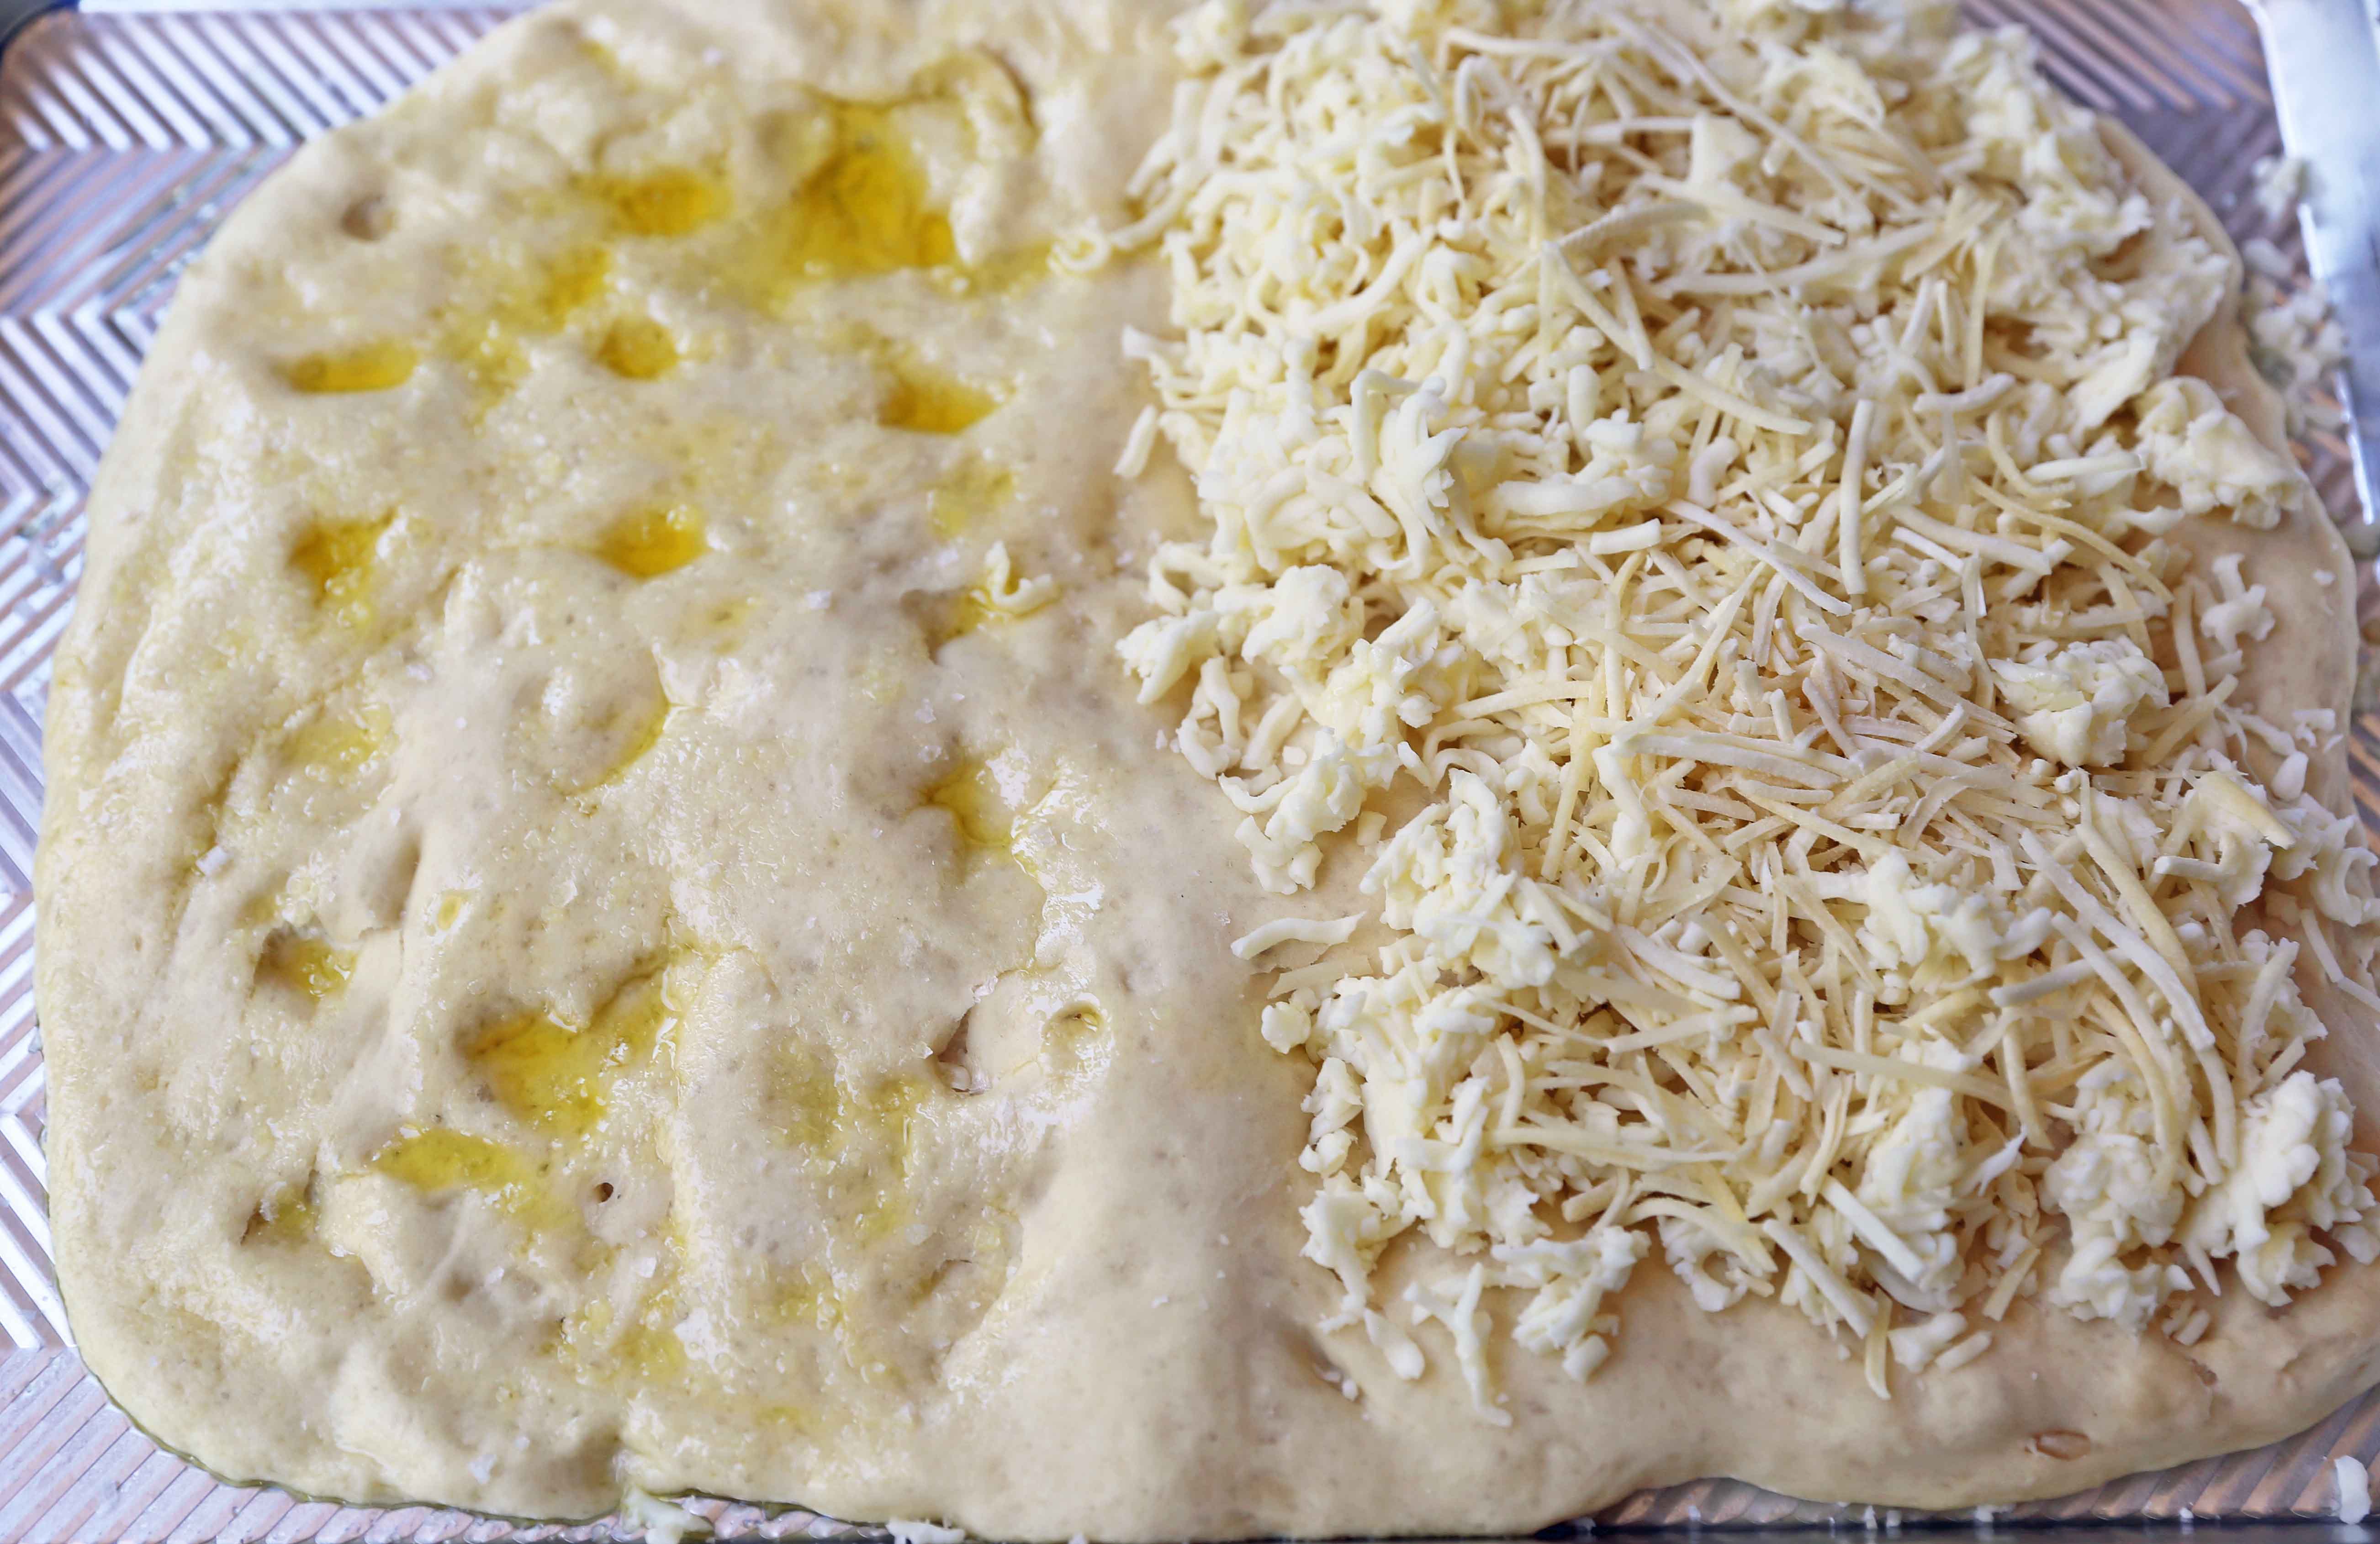 Ost Focaccia Brød Oppskrift. Hvordan lage hvitløk ost focaccia brød fra bunnen av. Den beste hvitløk ost breadsticks. www.moderhonning.com #focaccia